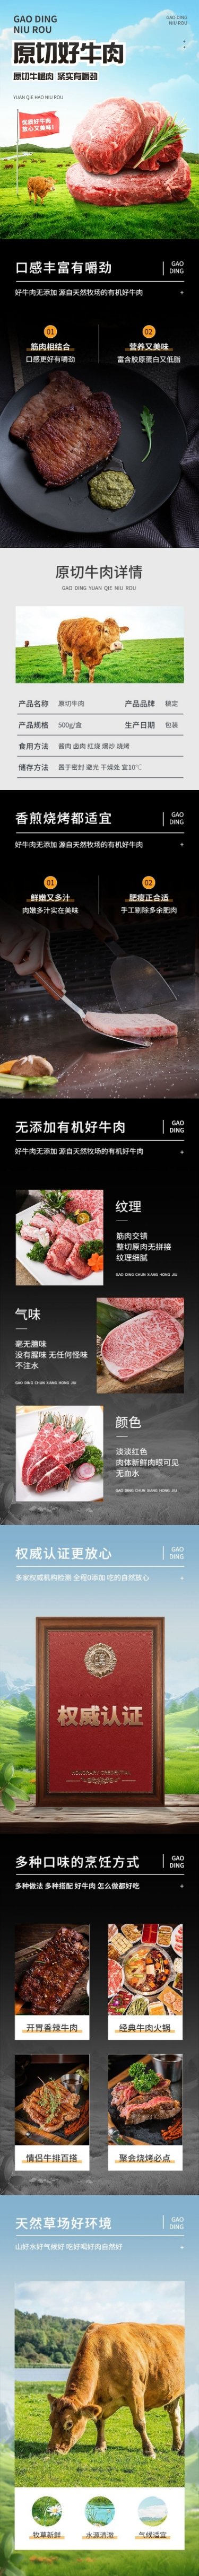 电商生鲜牛肉产品详情介绍详情页